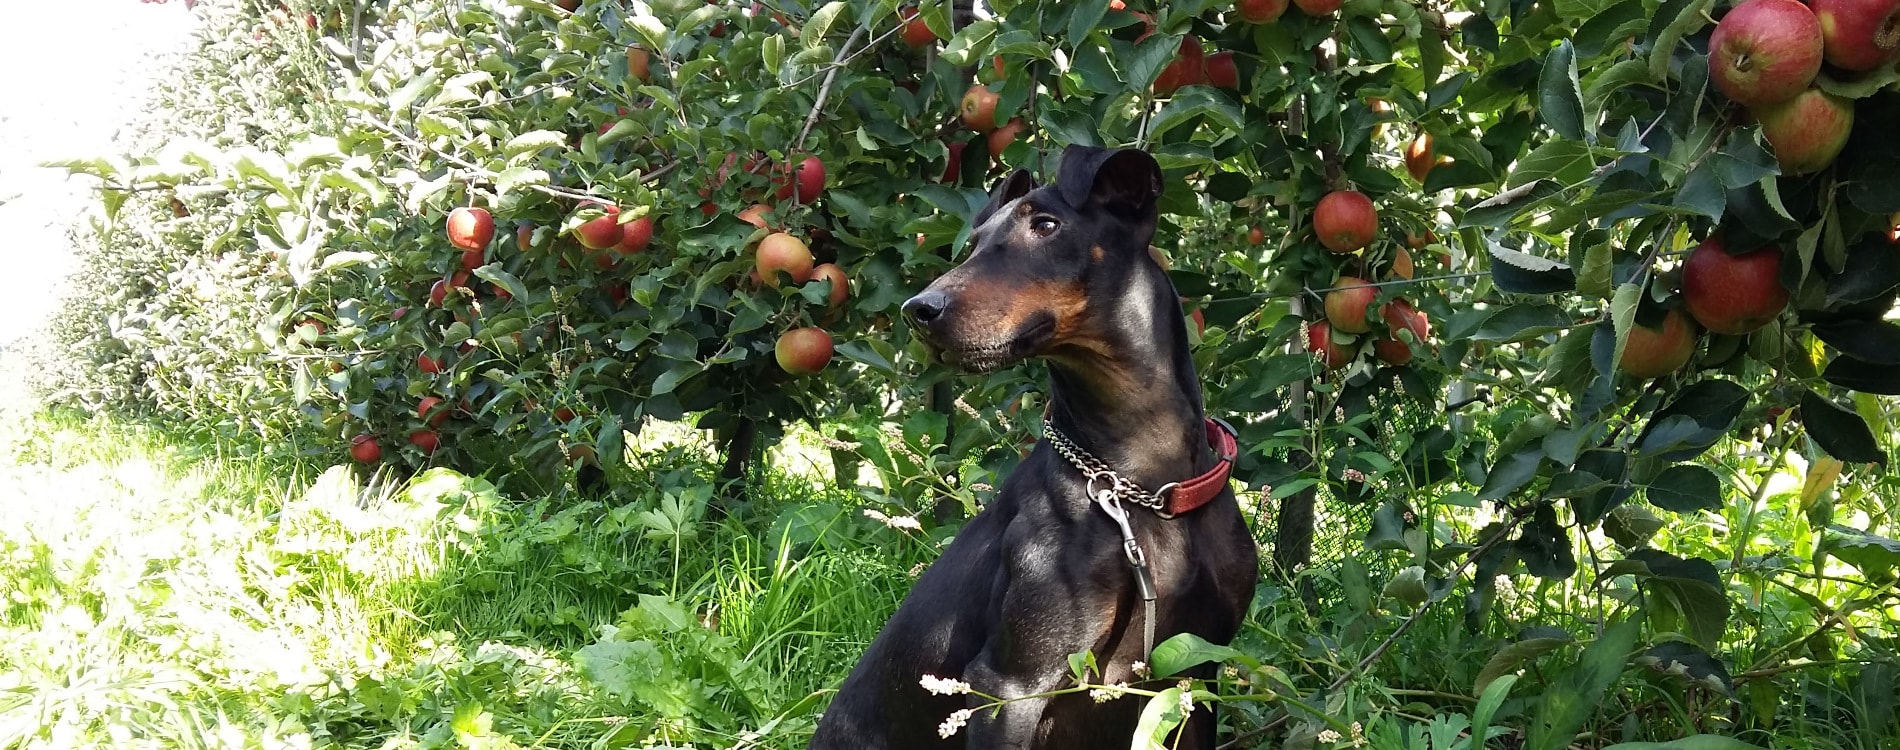 Chester in the apple garden